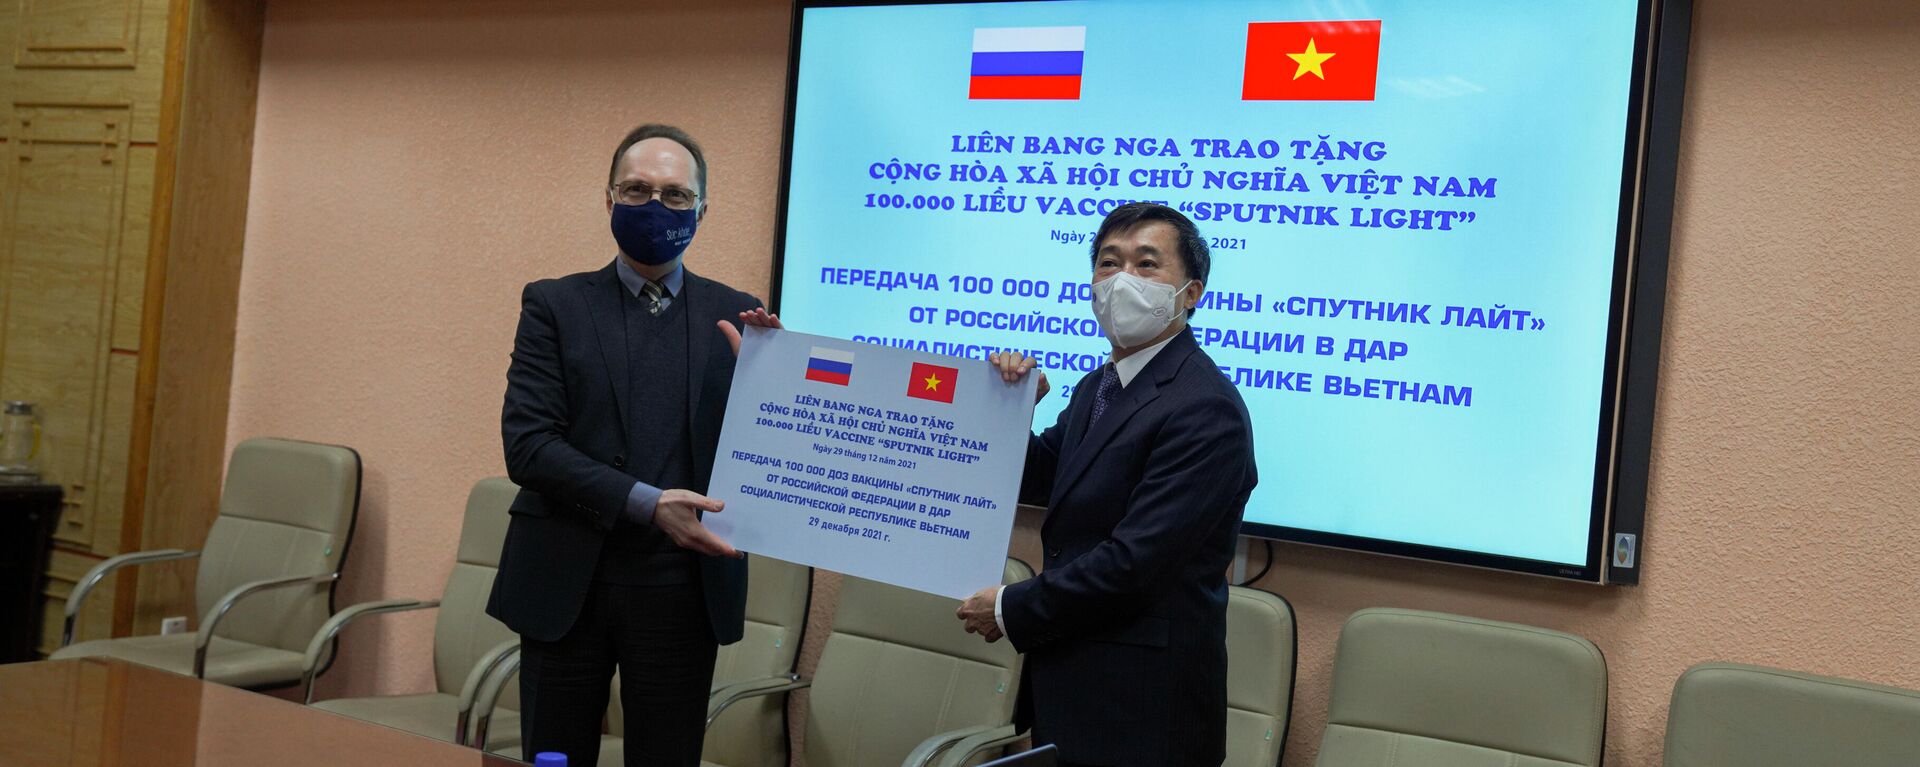 Lễ trao tặng 100.000 liều vaccine Sputnik Light của Liên bang Nga cho Việt Nam - Sputnik Việt Nam, 1920, 29.12.2021